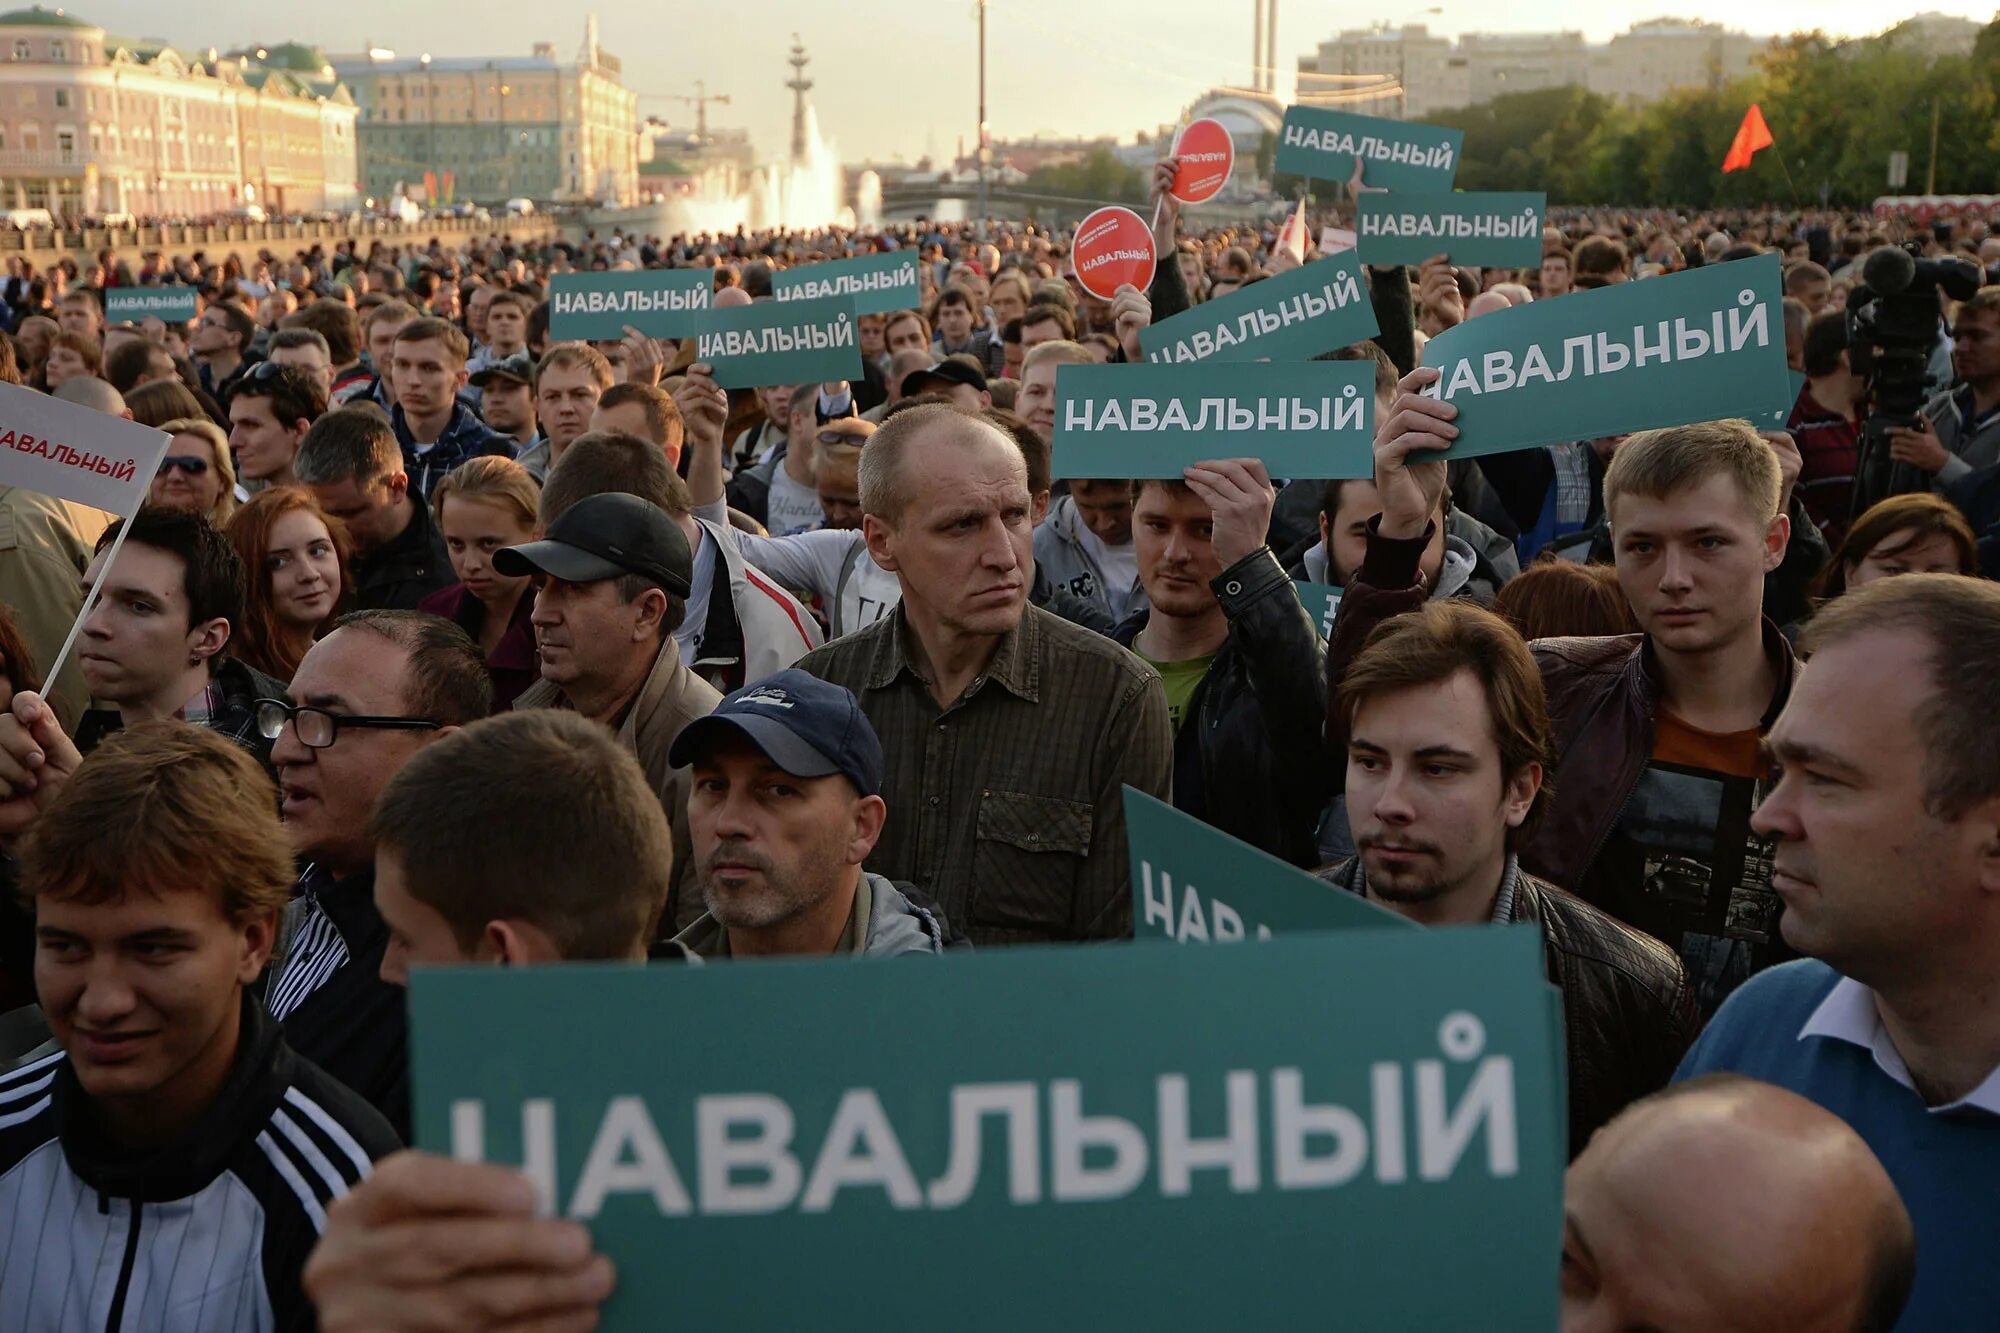 Навальный Болотная площадь. Сторонники Навального. Навальный на Болотной. Политическая оппозиция. Политический приверженец